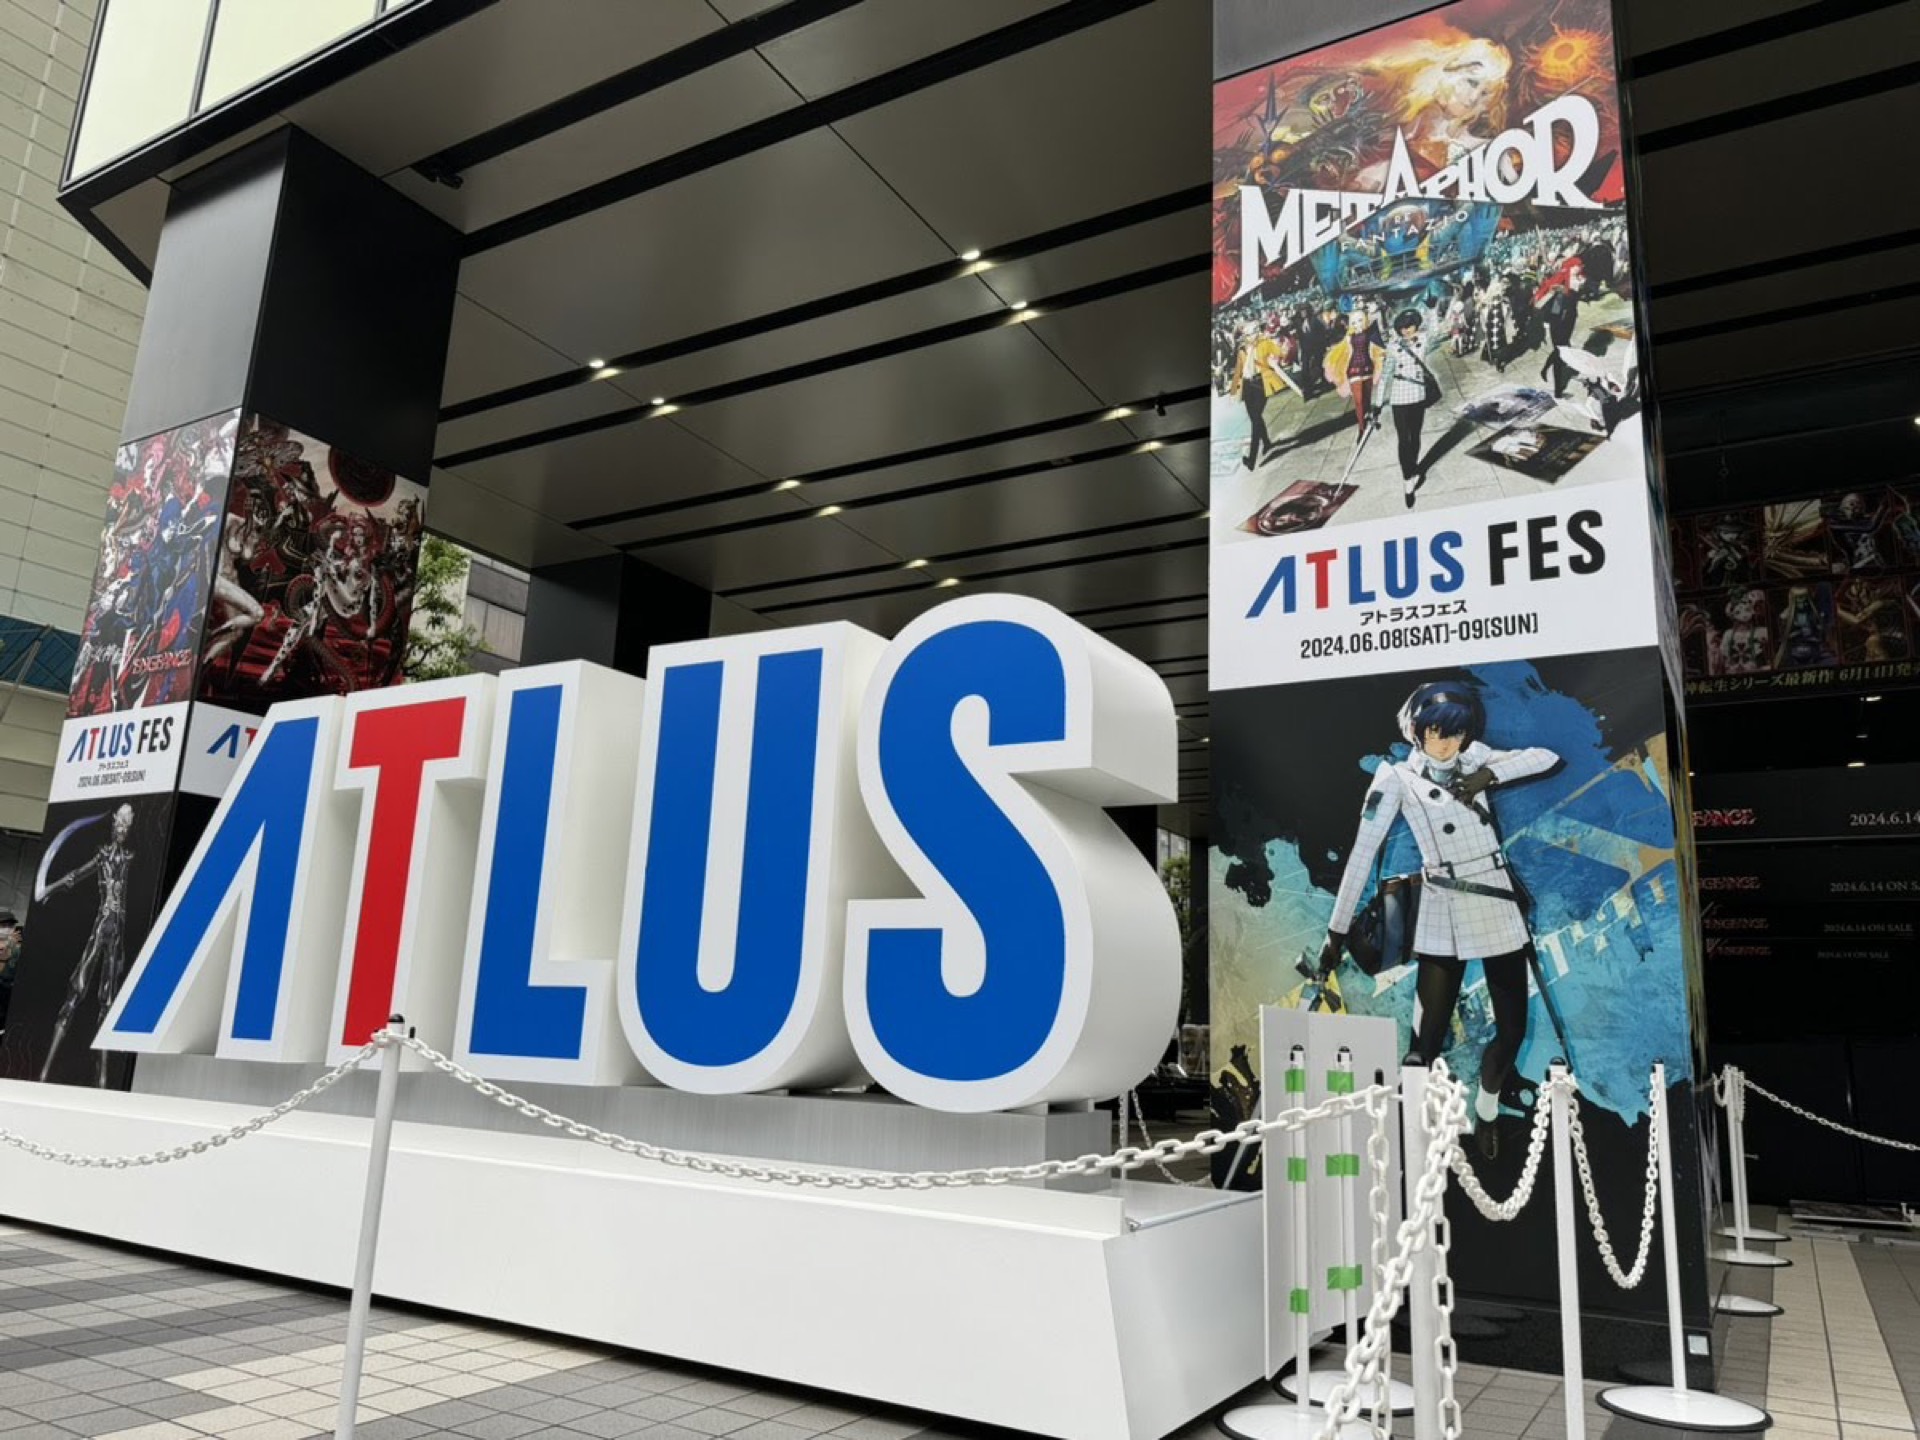 大型玩家活动「ATLUS FES」于秋叶原盛大举行 巨型御守创下金氏世界纪录